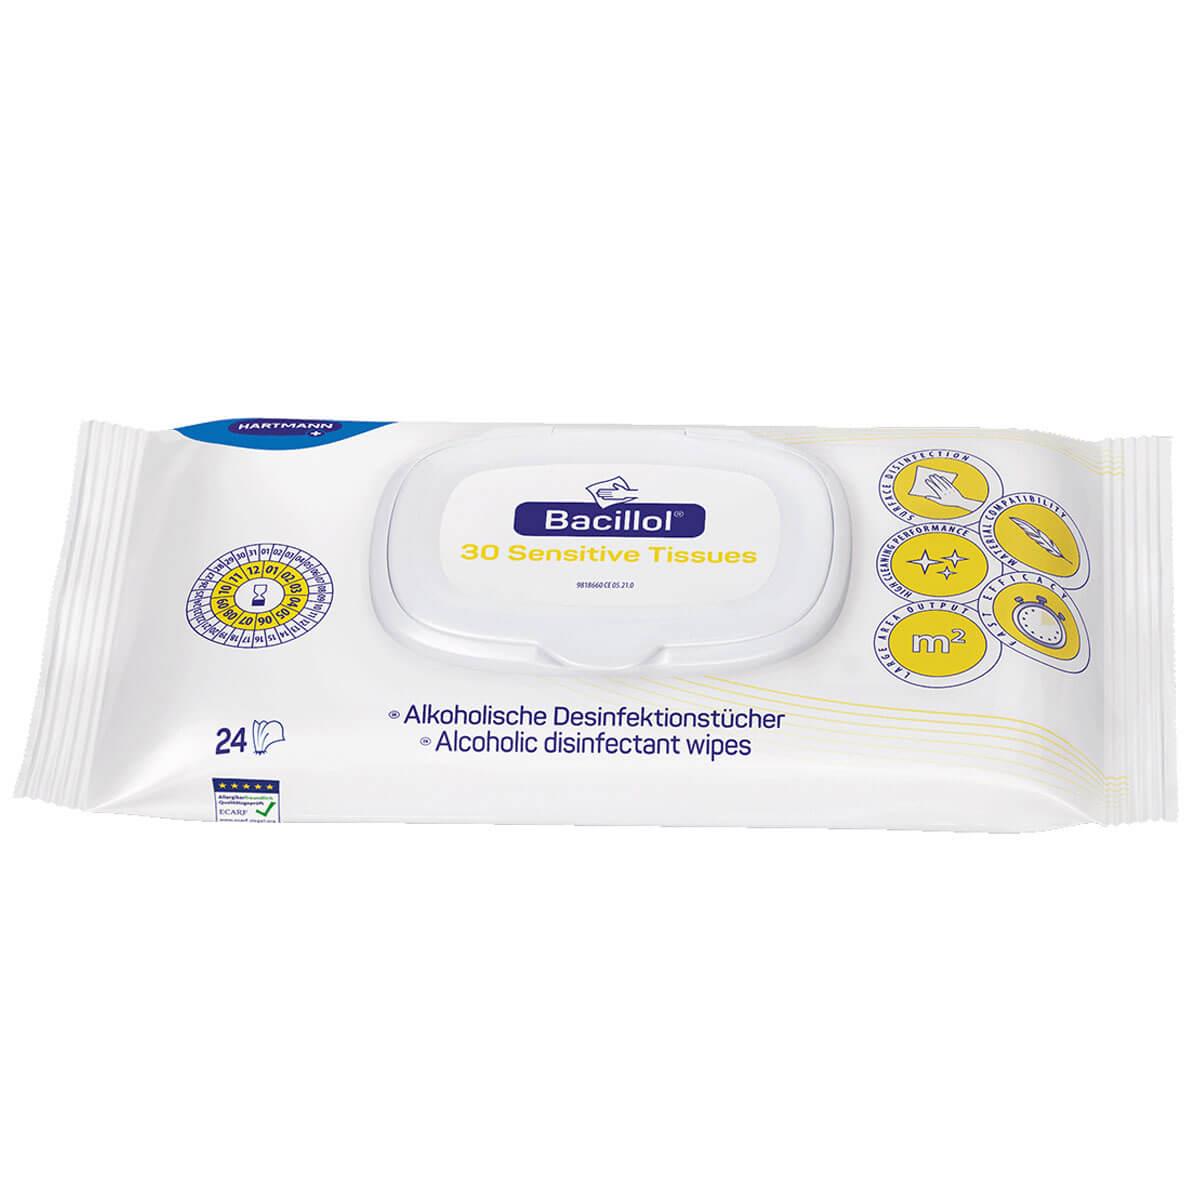 Desinfektionstücher Bacillol® 30 Sensitive Tissues, Flowpack, 24 Tücher